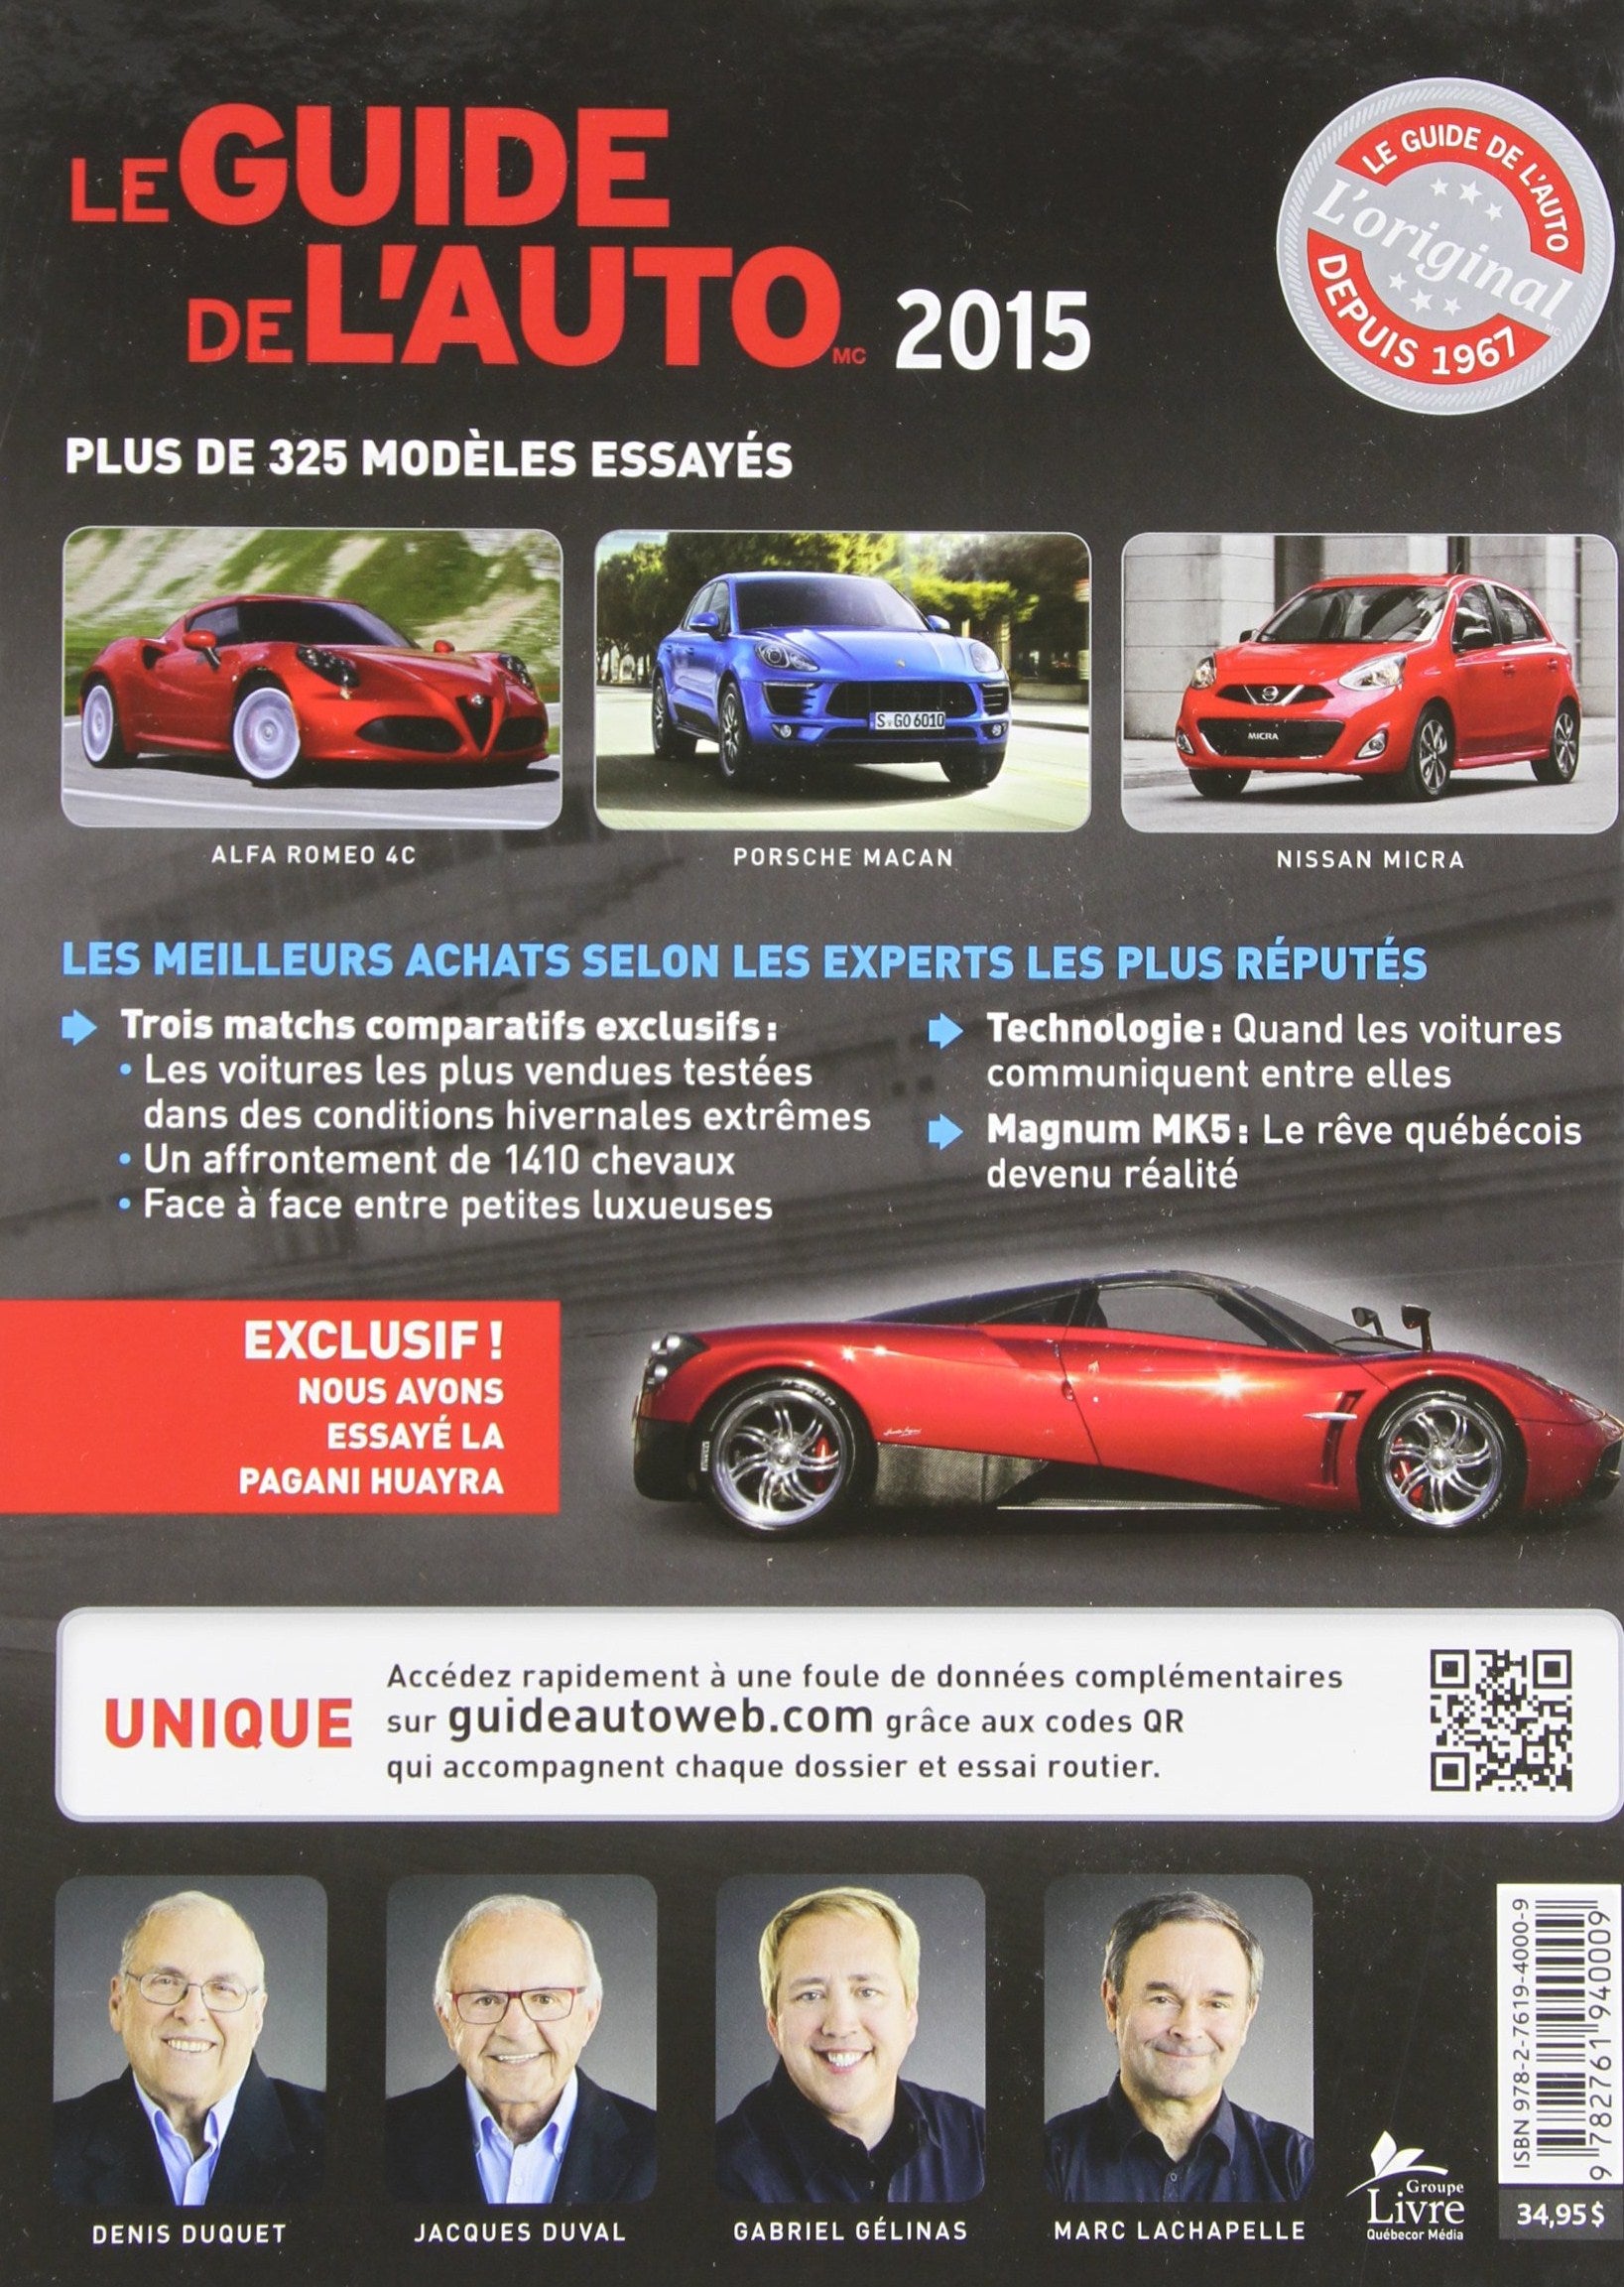 Le Guide de l'Auto 2015 (Denis Duquet)